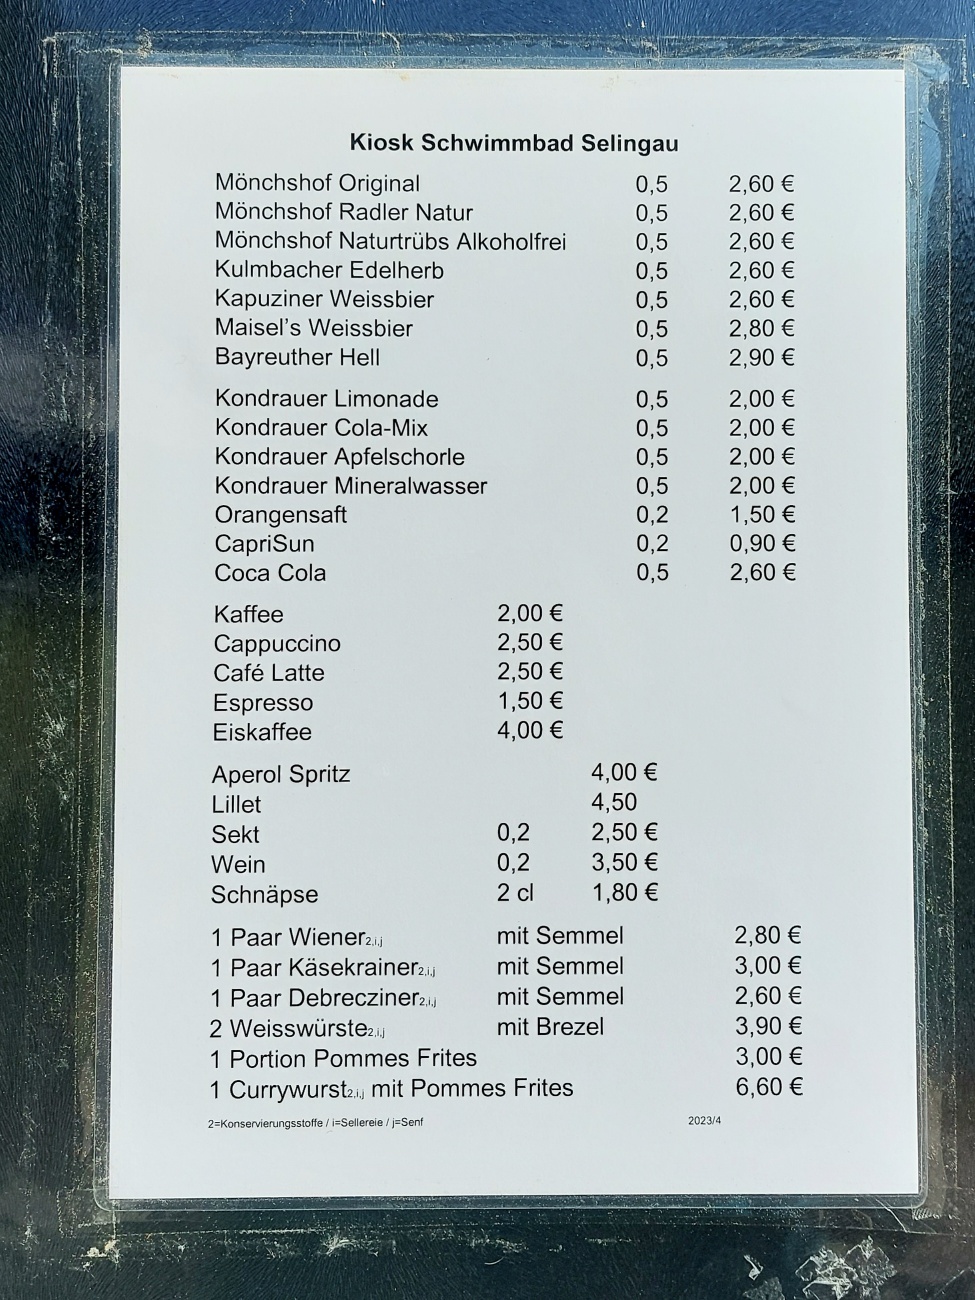 Foto: Martin Zehrer - Preise für Speisen und Getränke am Freibad Selingau. <br />
<br />
Momentaufanahme am 12. Juni 2023 - können bereits verändert sein... 